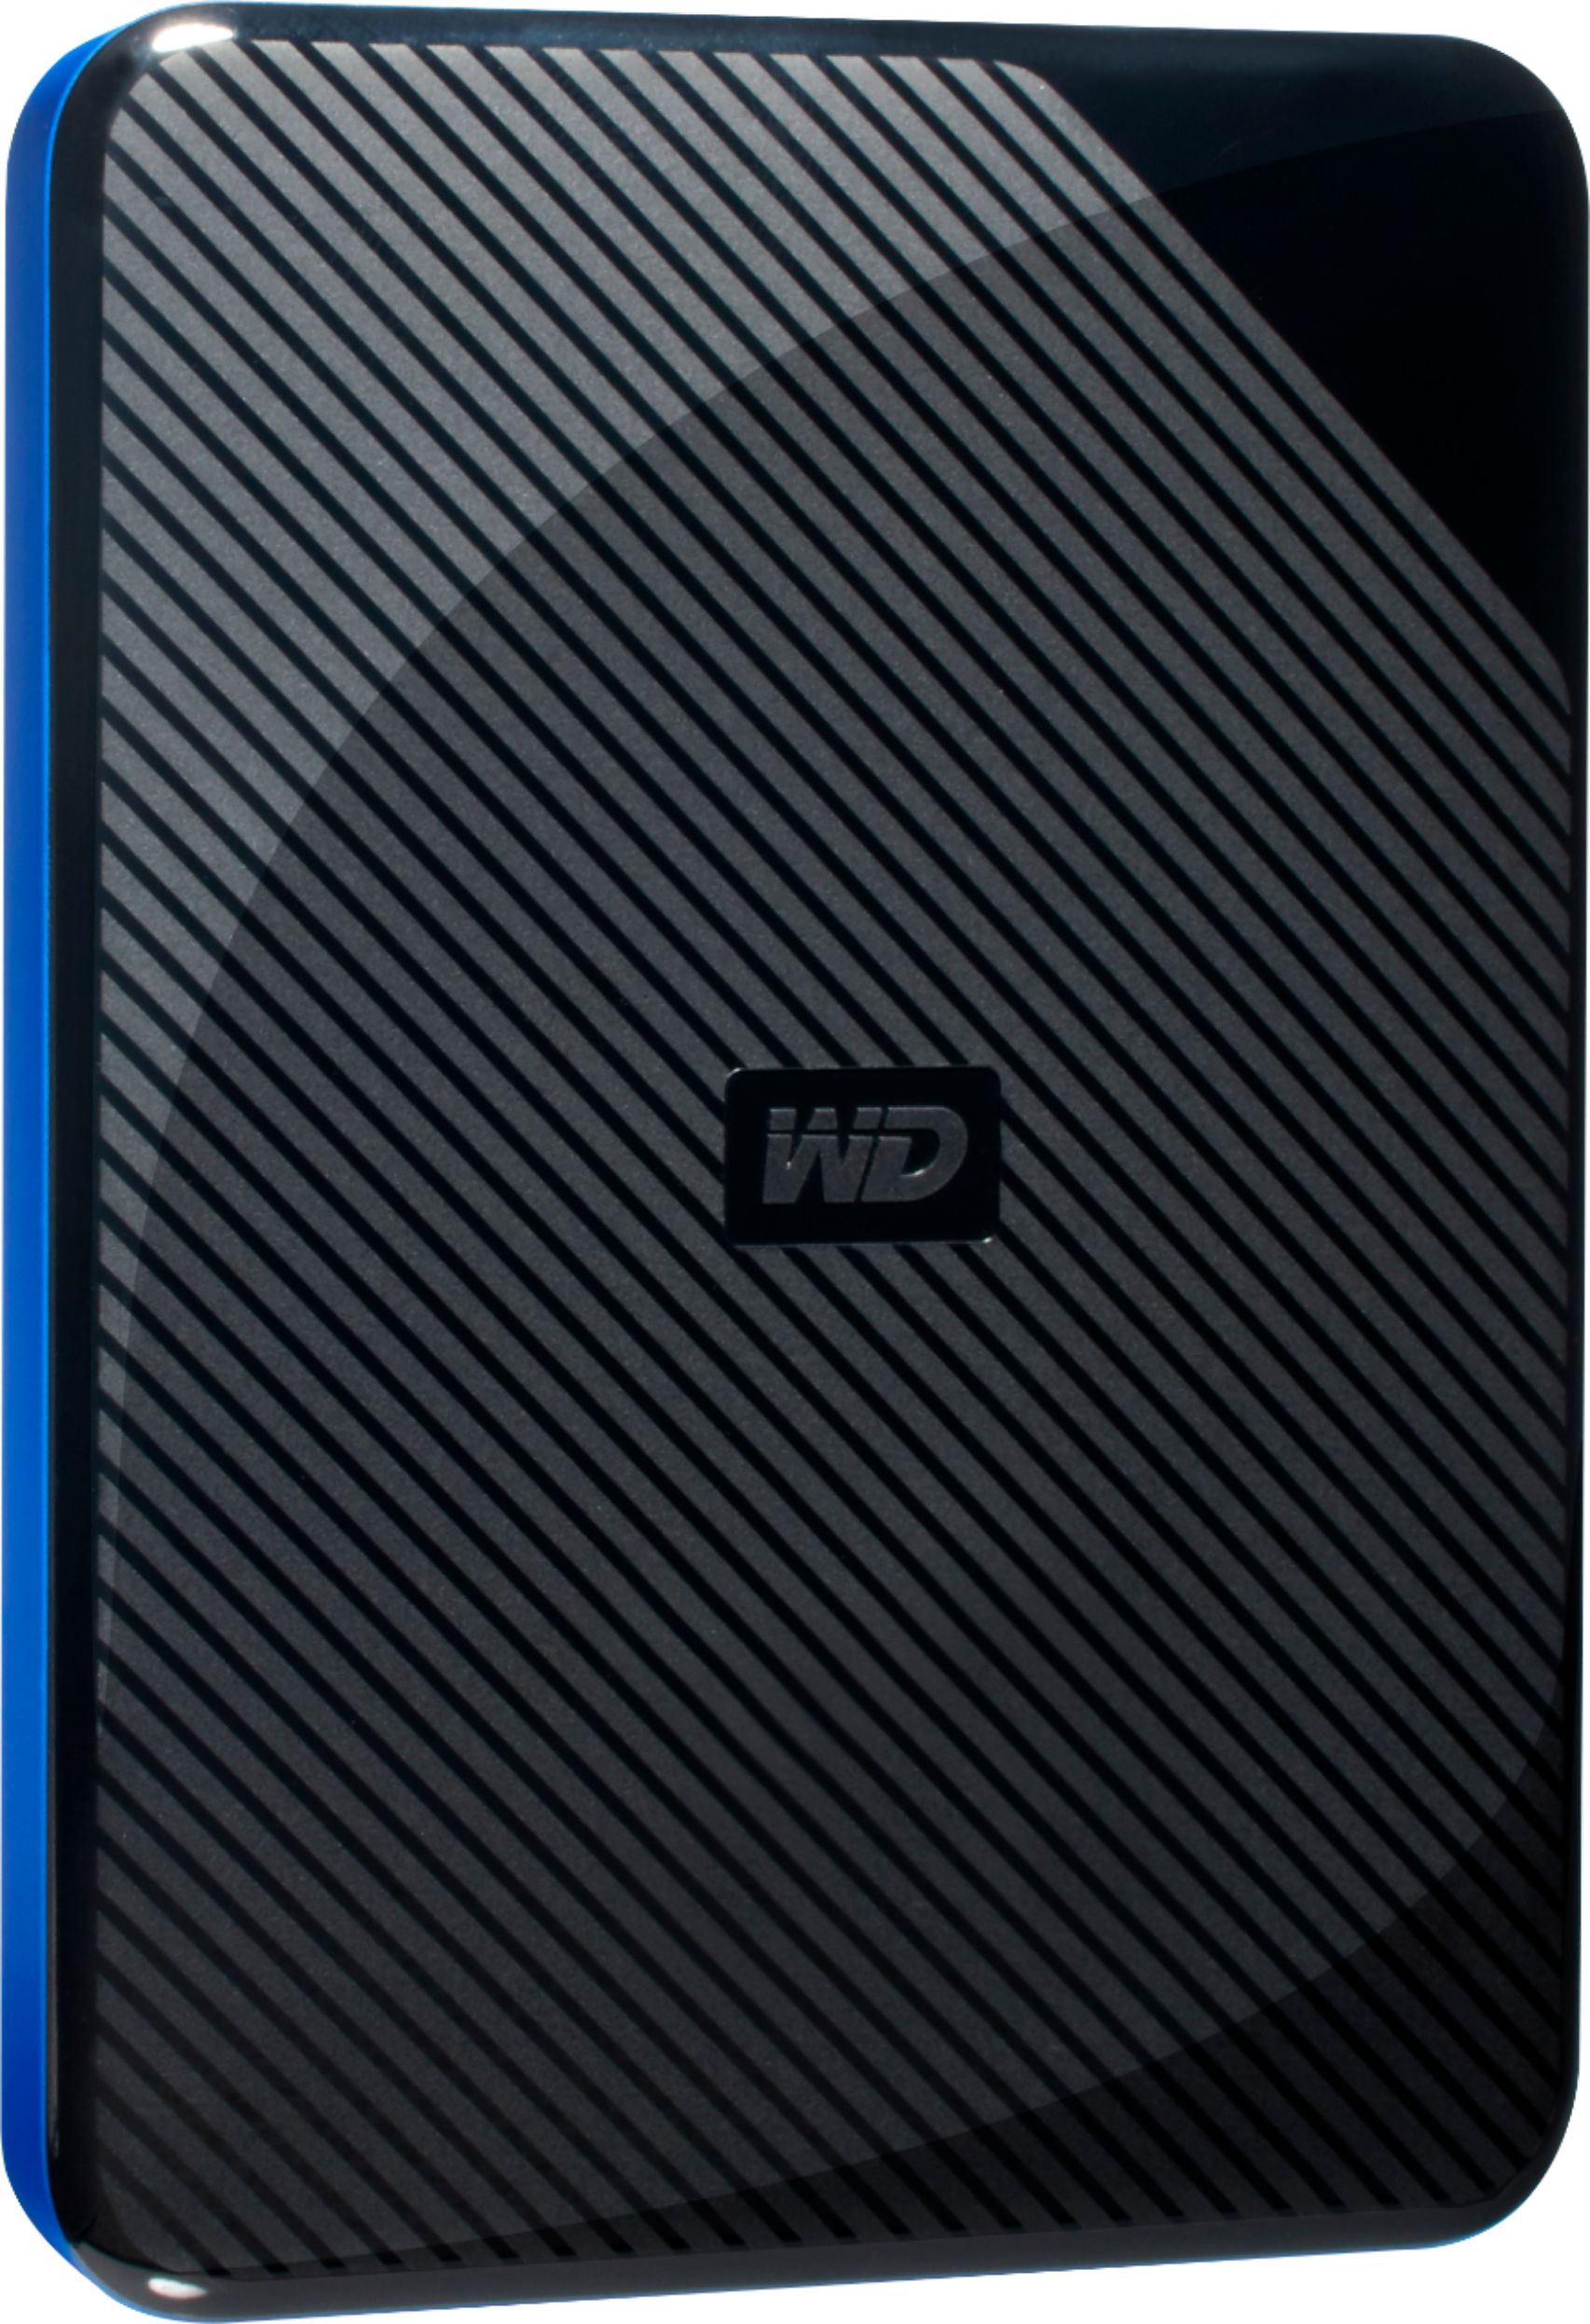 fjende klodset vej WD Game Drive for PS4 2TB External USB 3.0 Portable Hard Drive Black/Blue  WDBDFF0020BBK-WESN - Best Buy